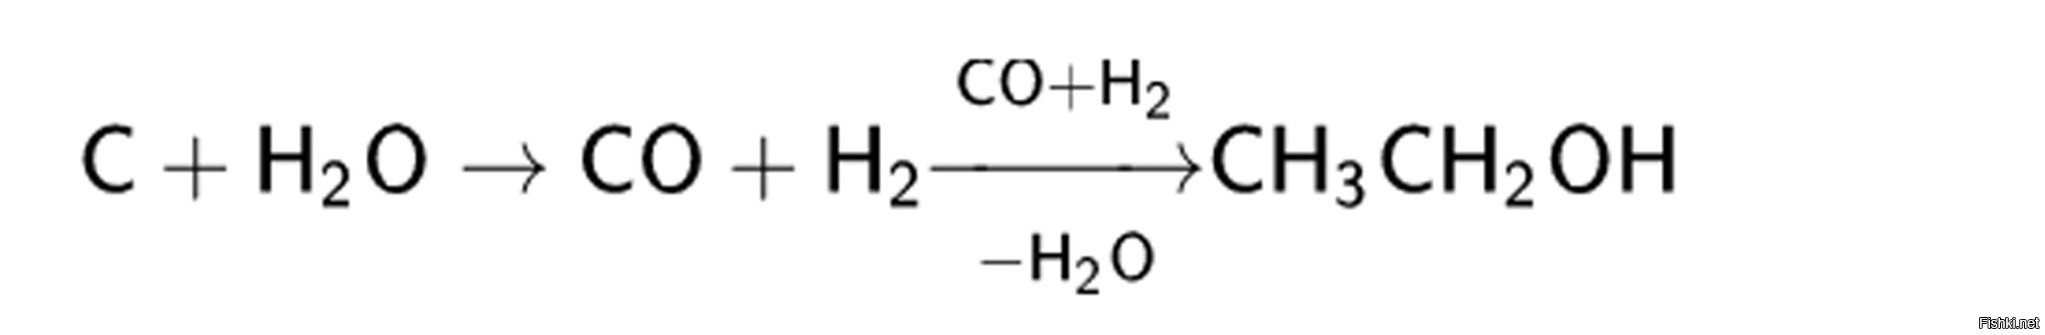 Метанол метанол простой эфир. Диэтиловый эфир из метанола. Диэтиловый эфир в оксид углерода. Диэтиловый эфир из ацетальдегида. Метанол из Синтез газа уравнение.